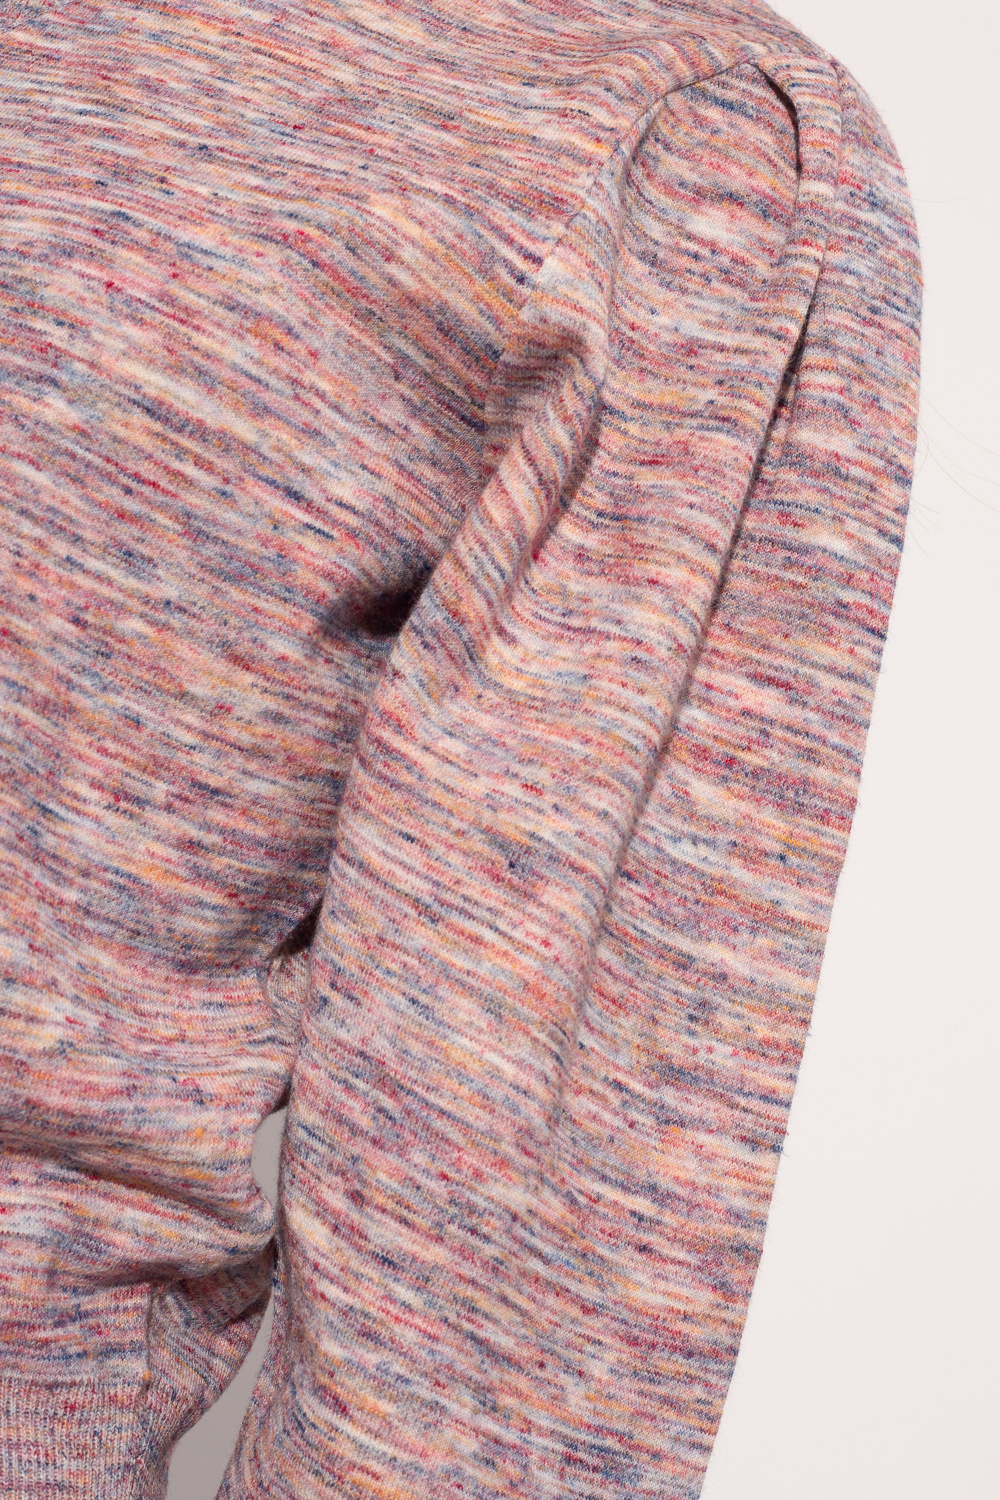 Isabel Marant Etoile ‘Kelaya’ sweater